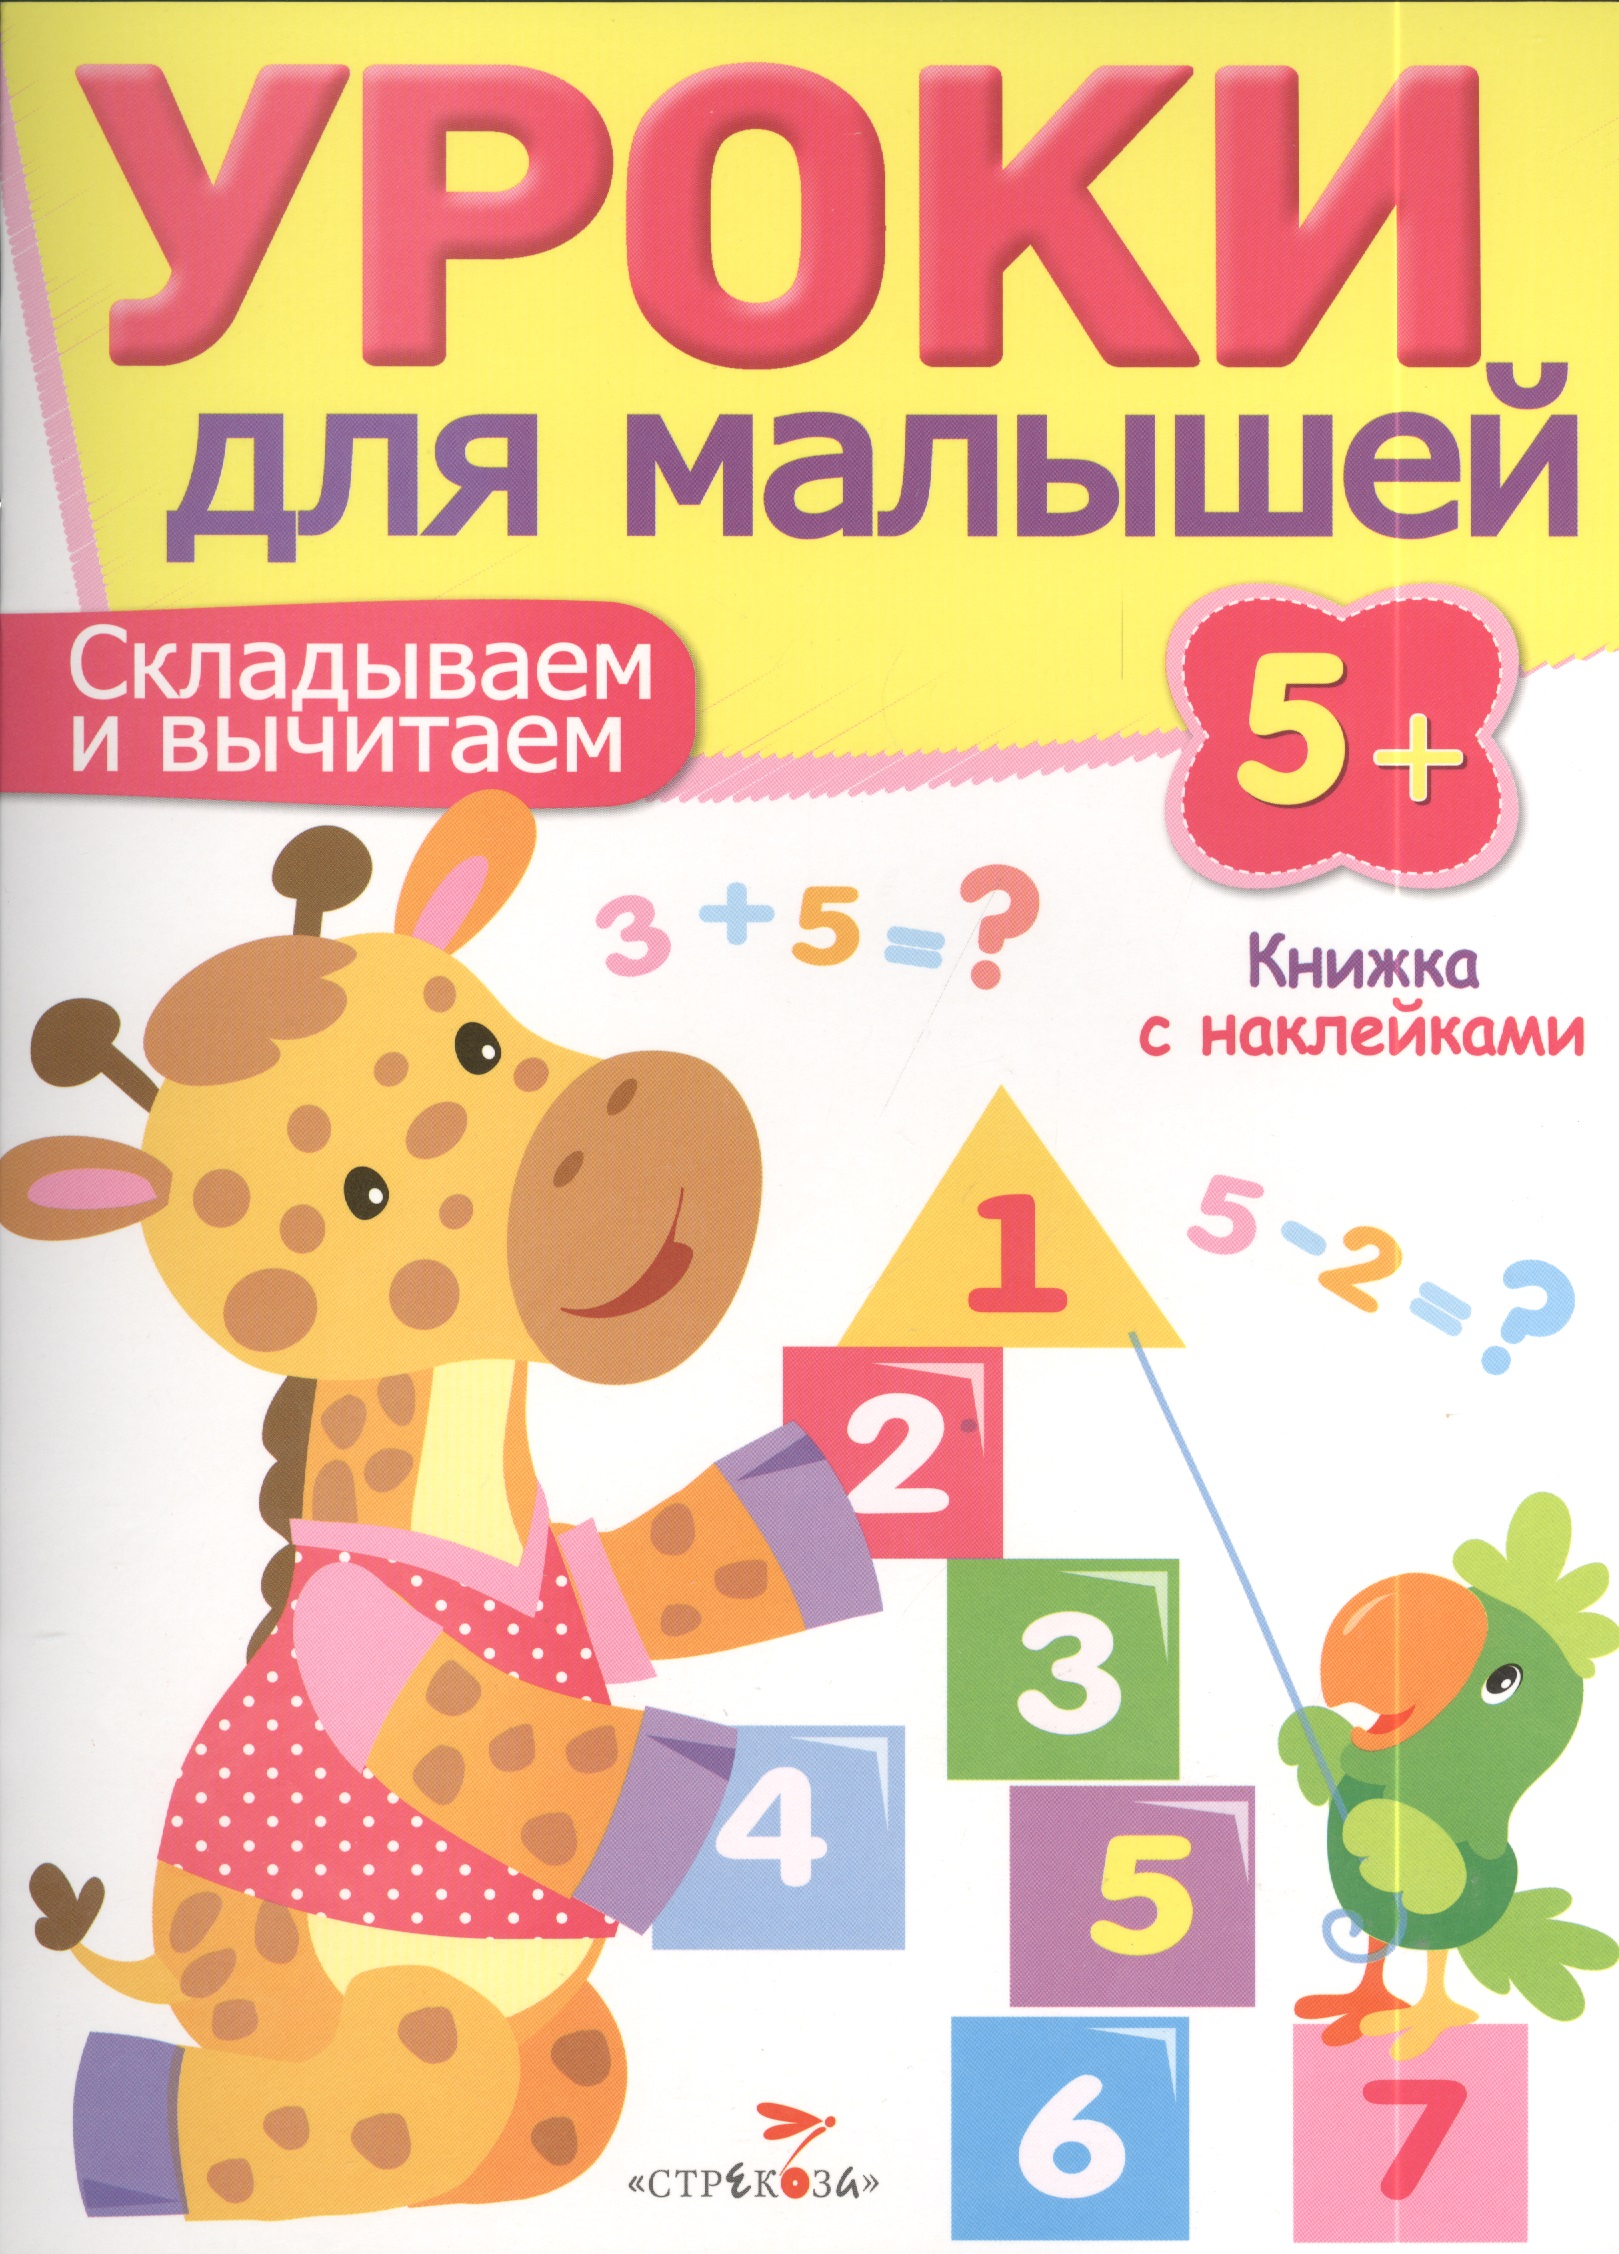 Попова И. Уроки для малышей 5+. Складываем и вычитаем